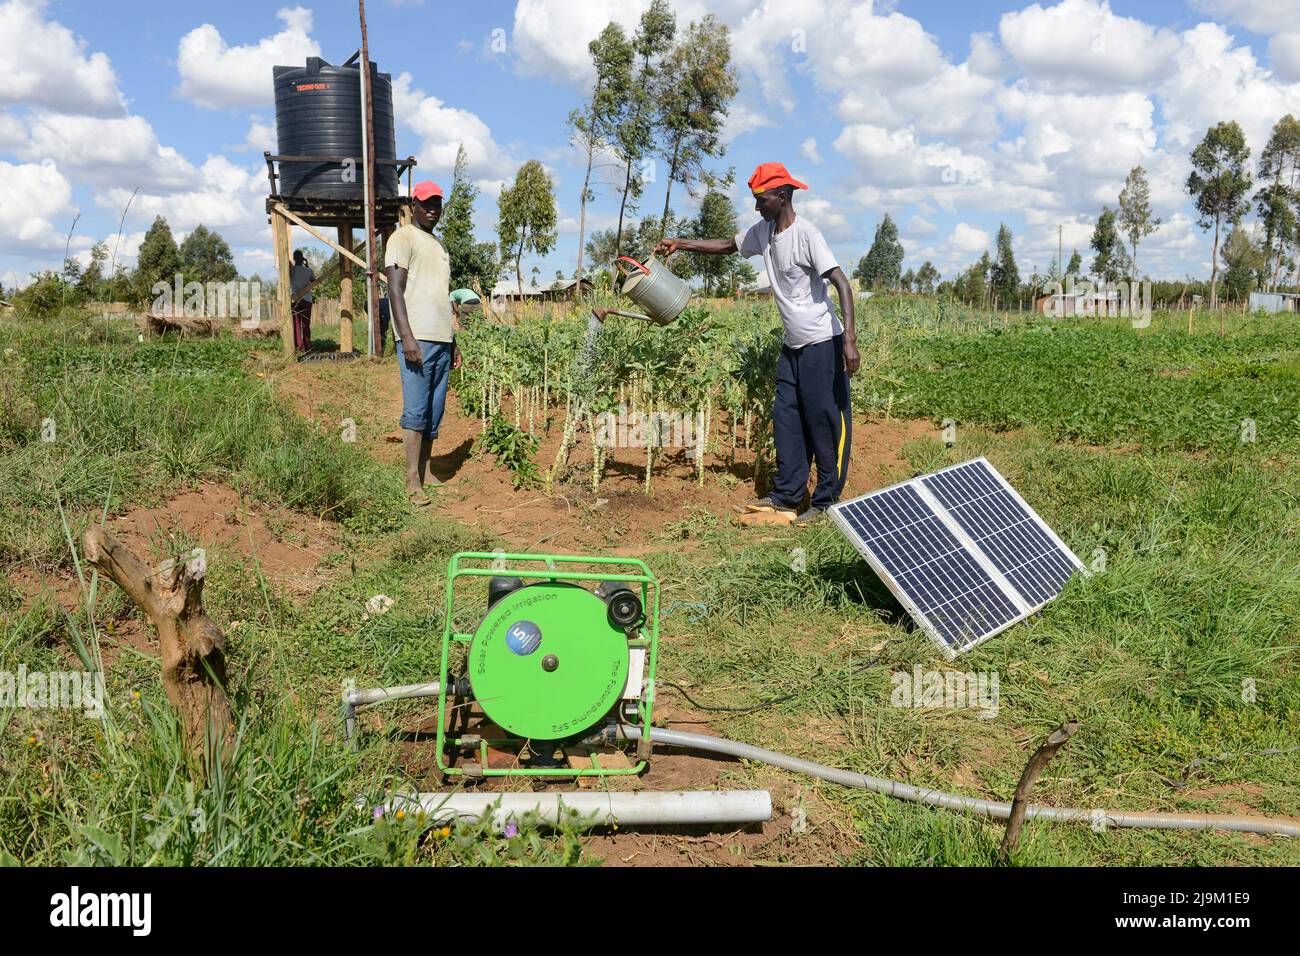 KENYA, Eldoret città, villaggio Kiplombe, agricoltore utilizza un pannello fotovoltaico solare mobile per alimentare una piccola pompa elettrica per riempire l'acqua da un pozzo in un serbatoio per gocciolare irrigazione di verdure Foto Stock